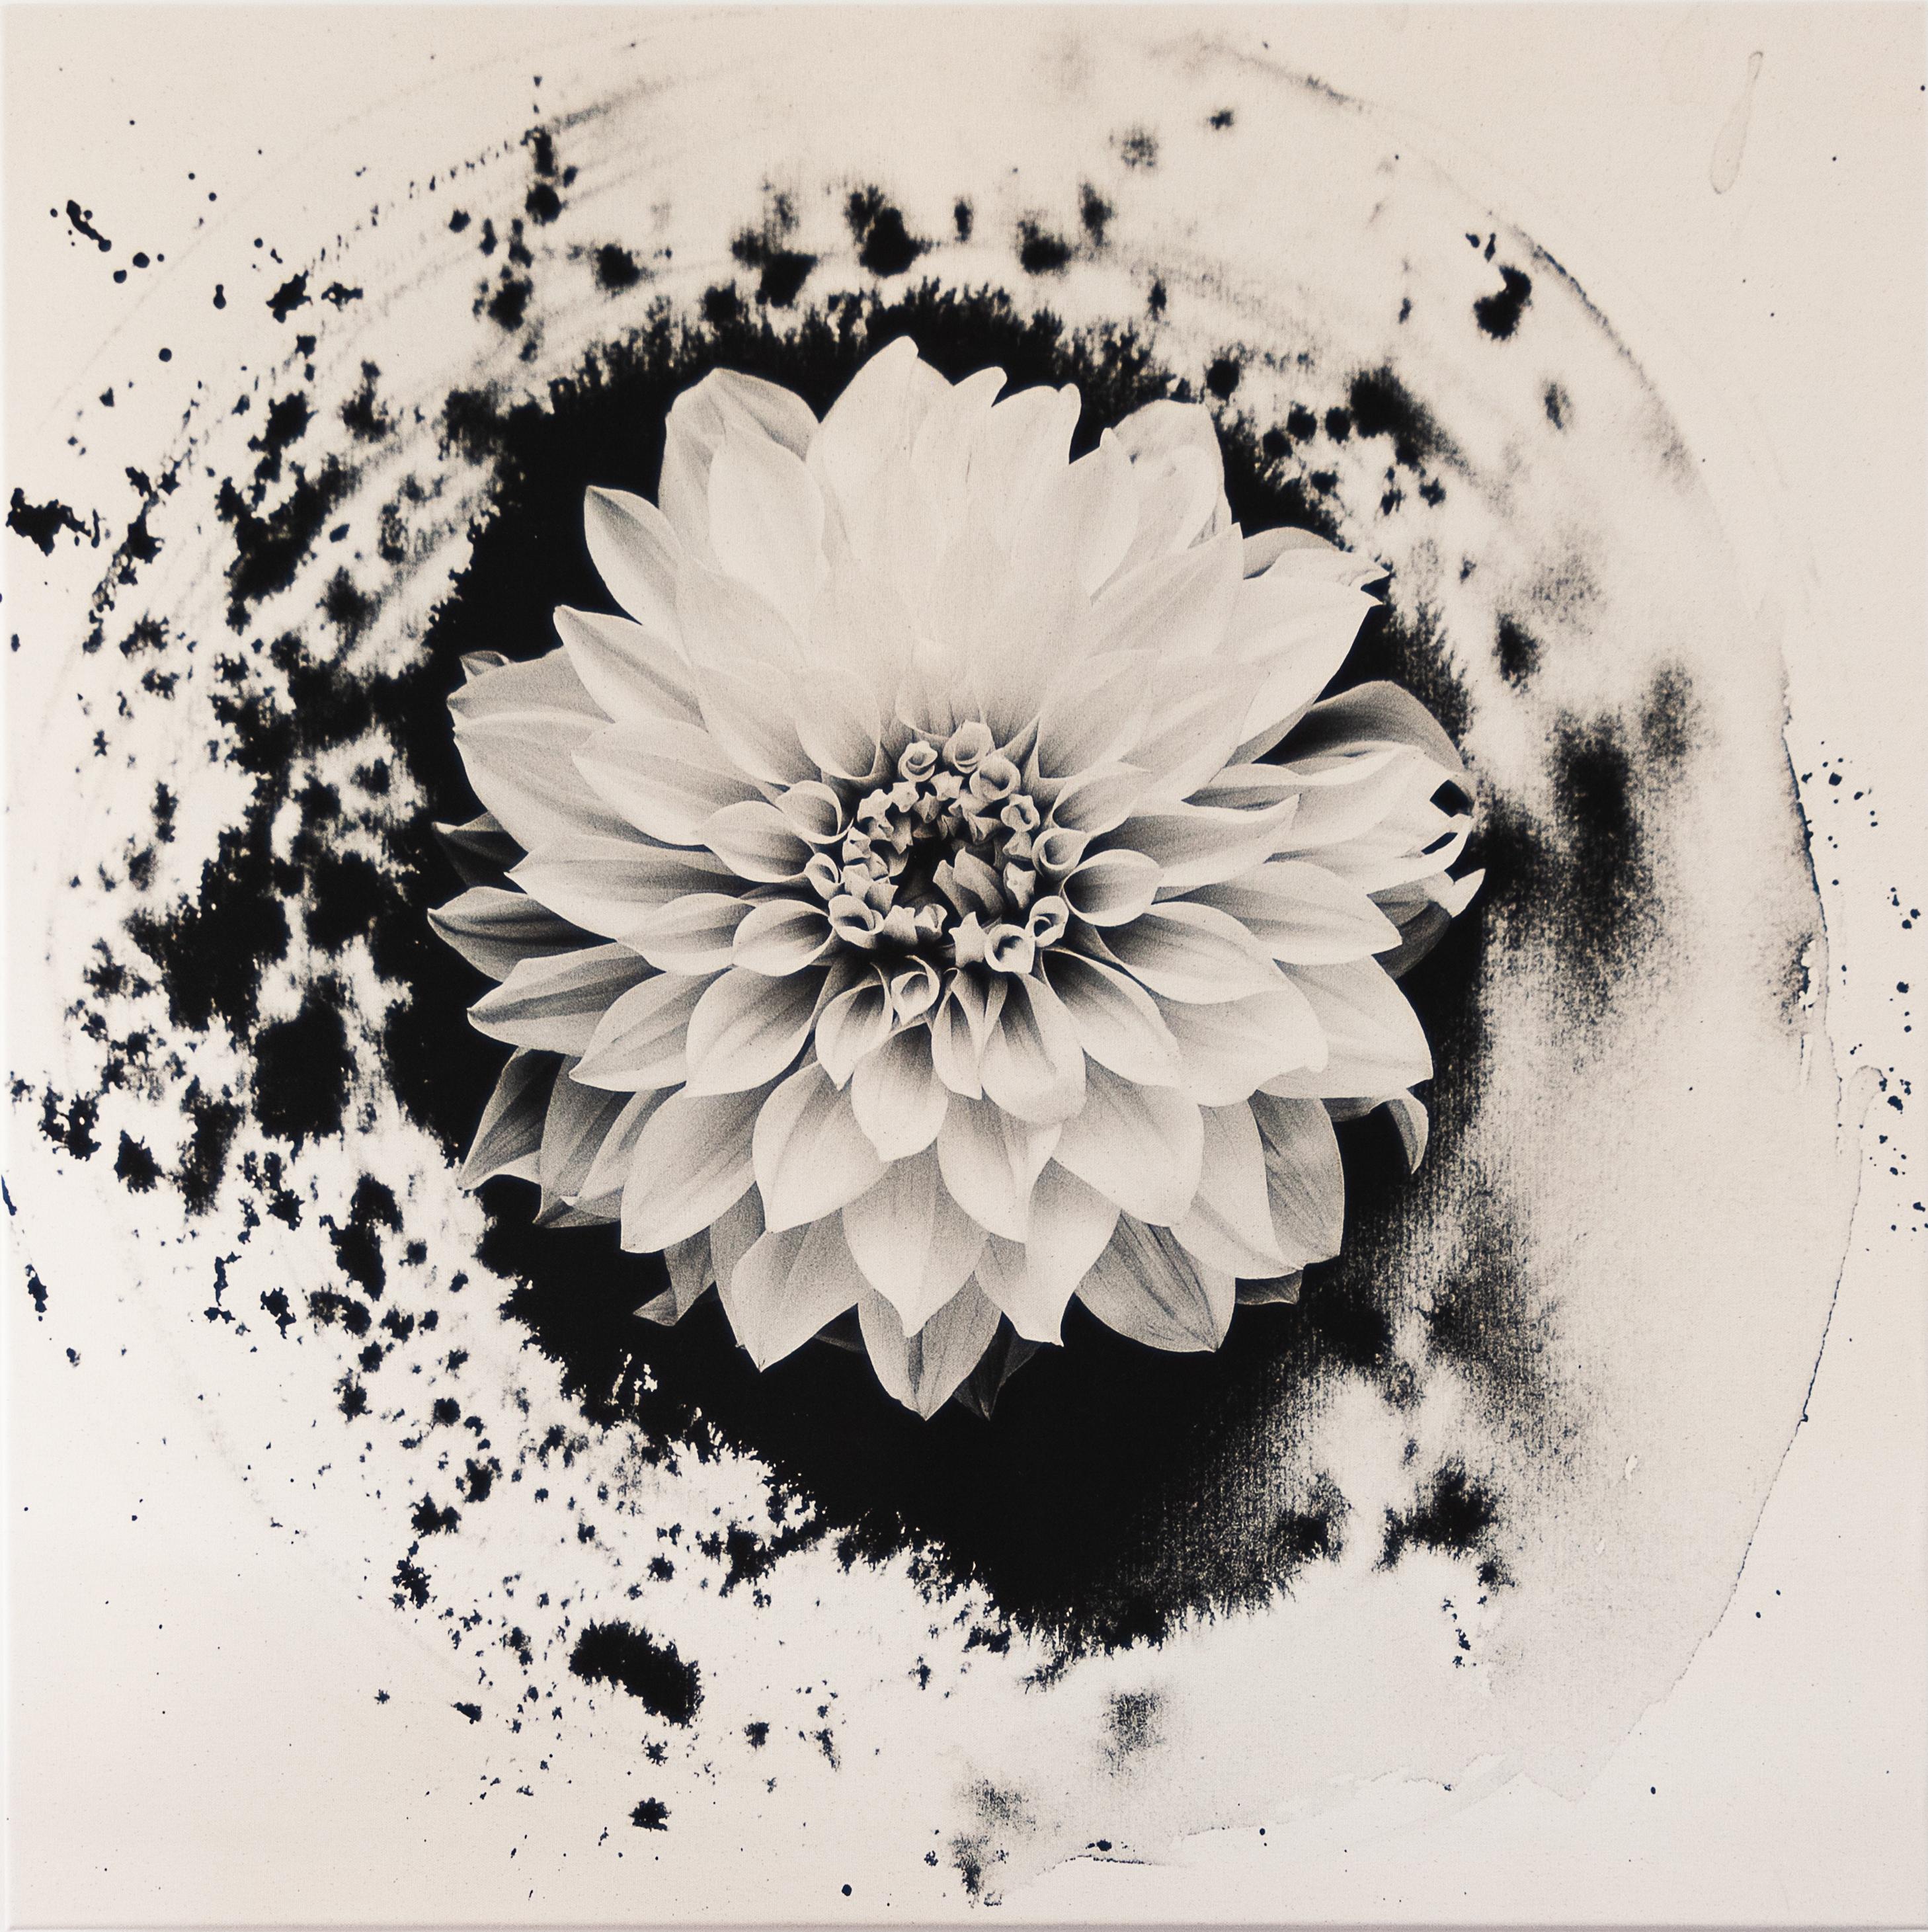 Dahlia sur encre - photographie de film florale sur toile de coton, édition limitée à 5 exemplaires